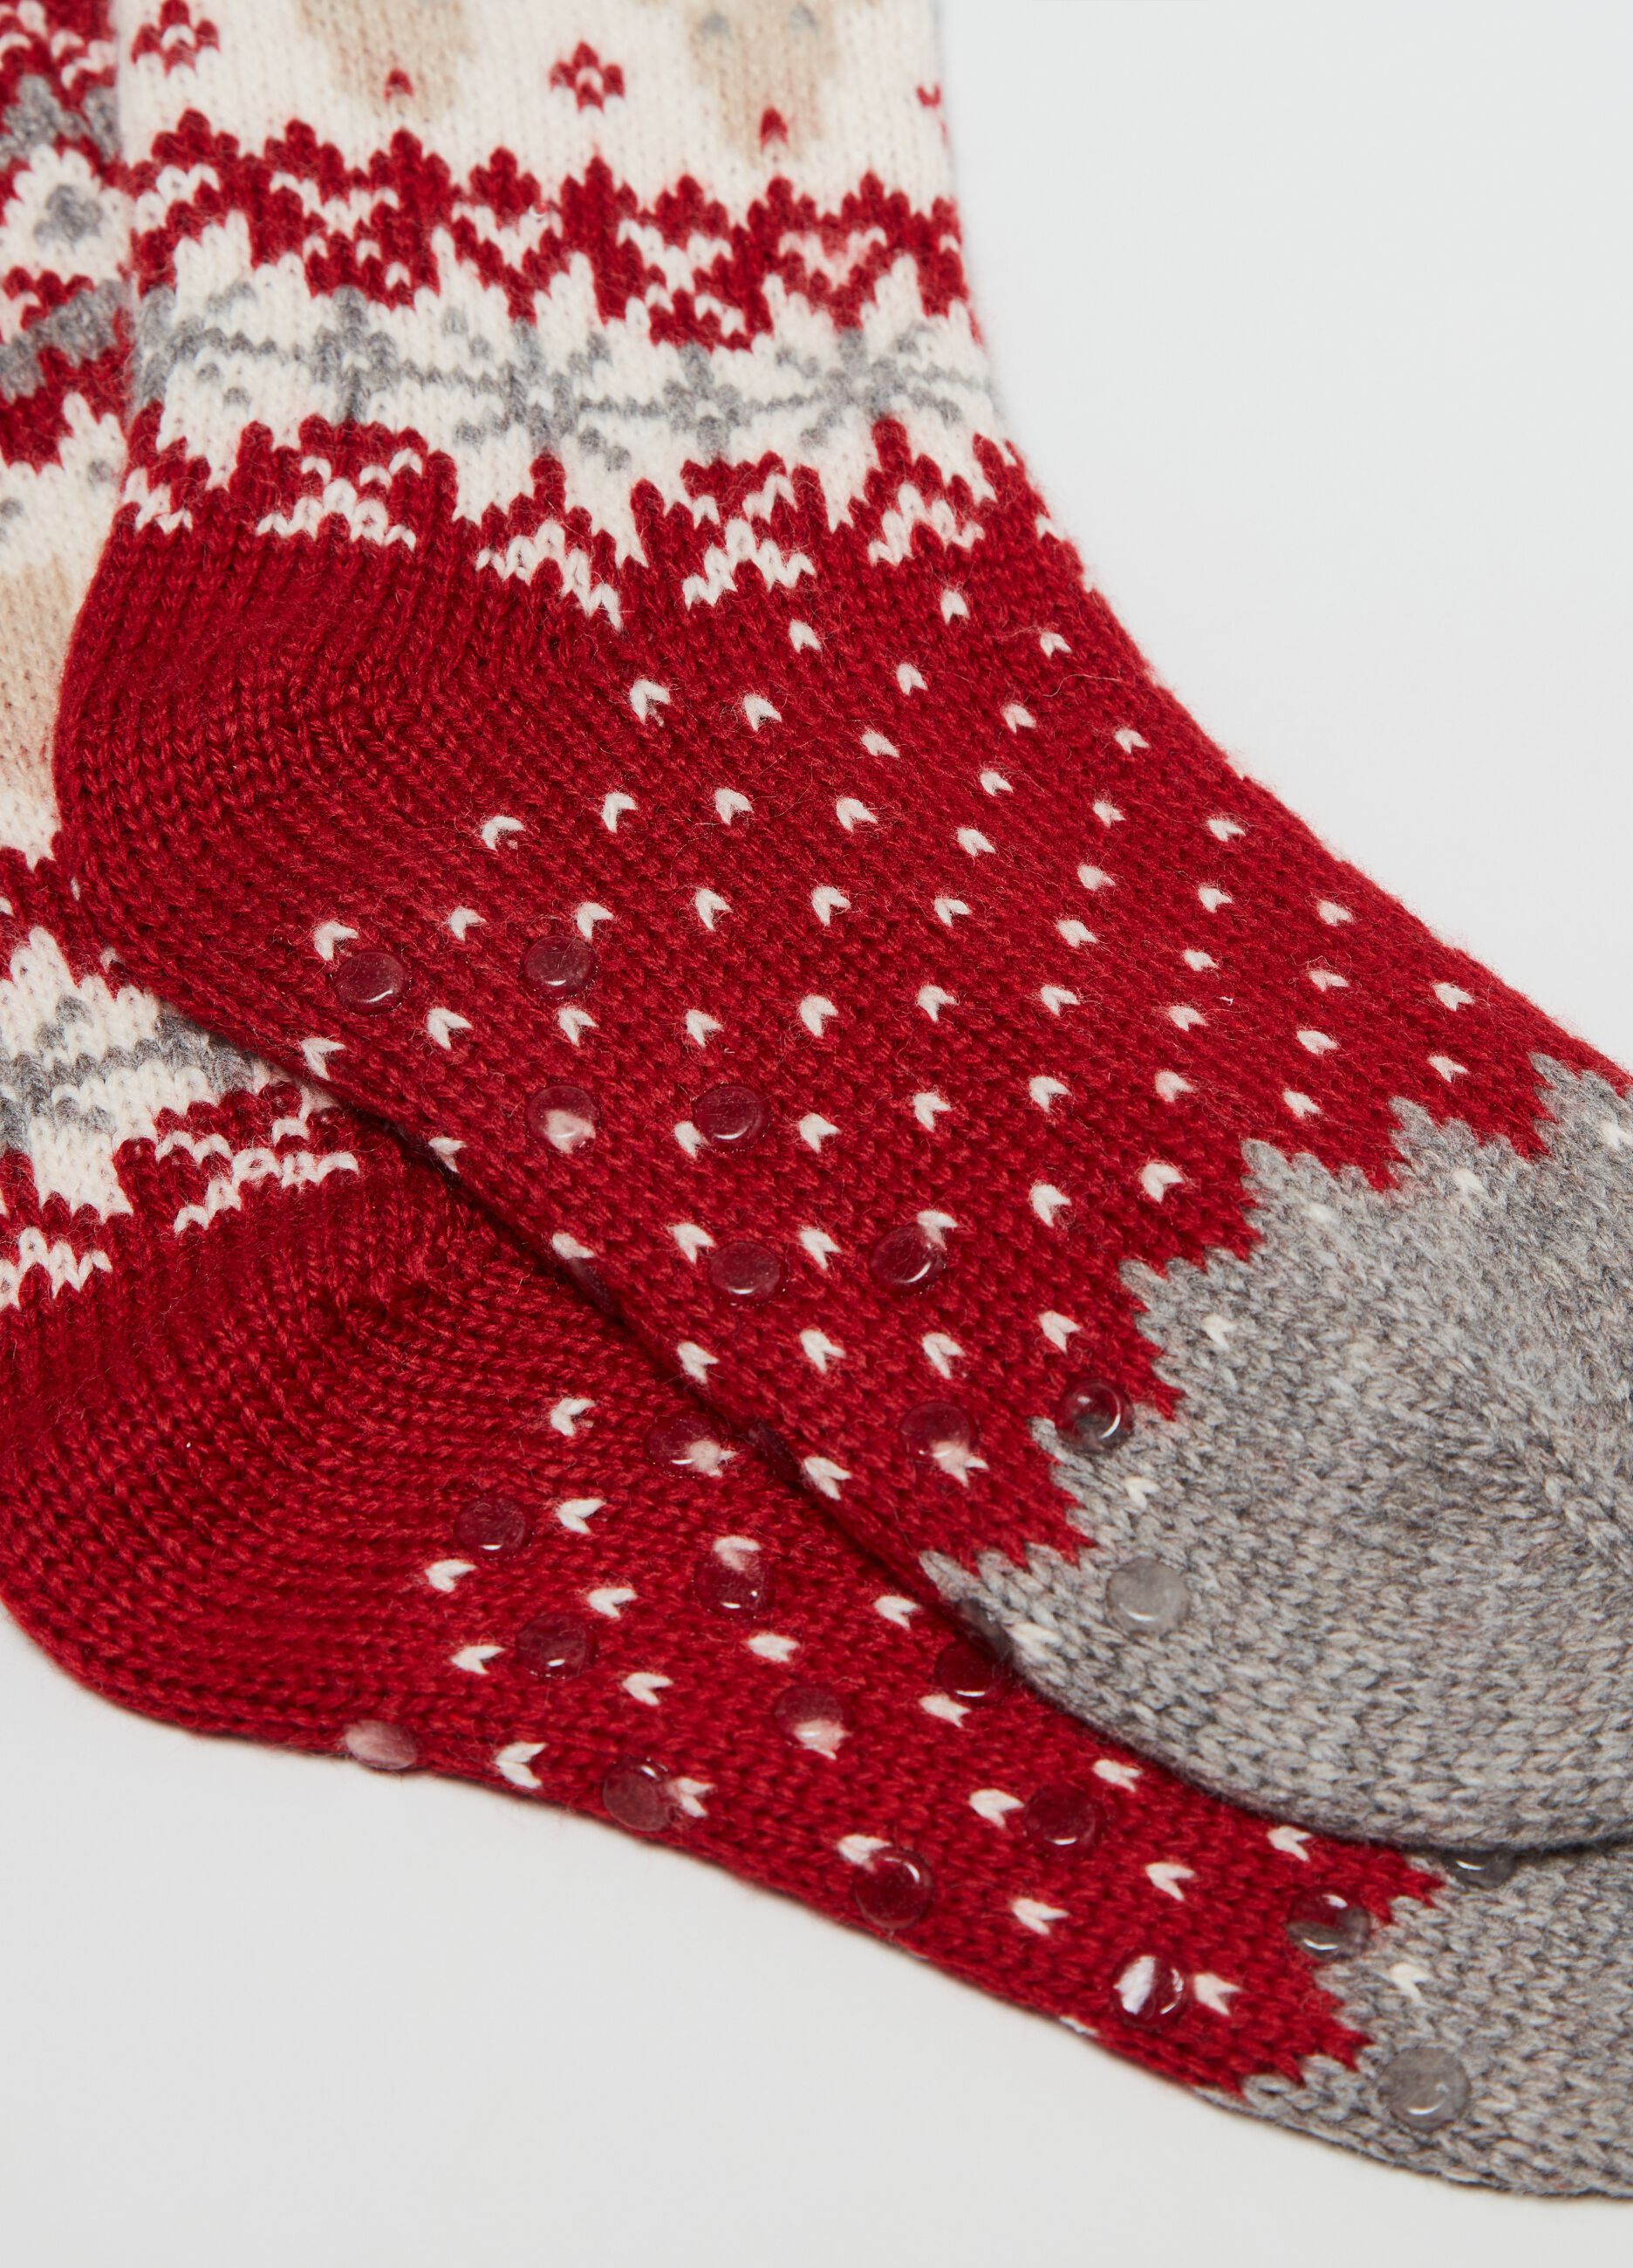 Slipper socks with Norwegian motif